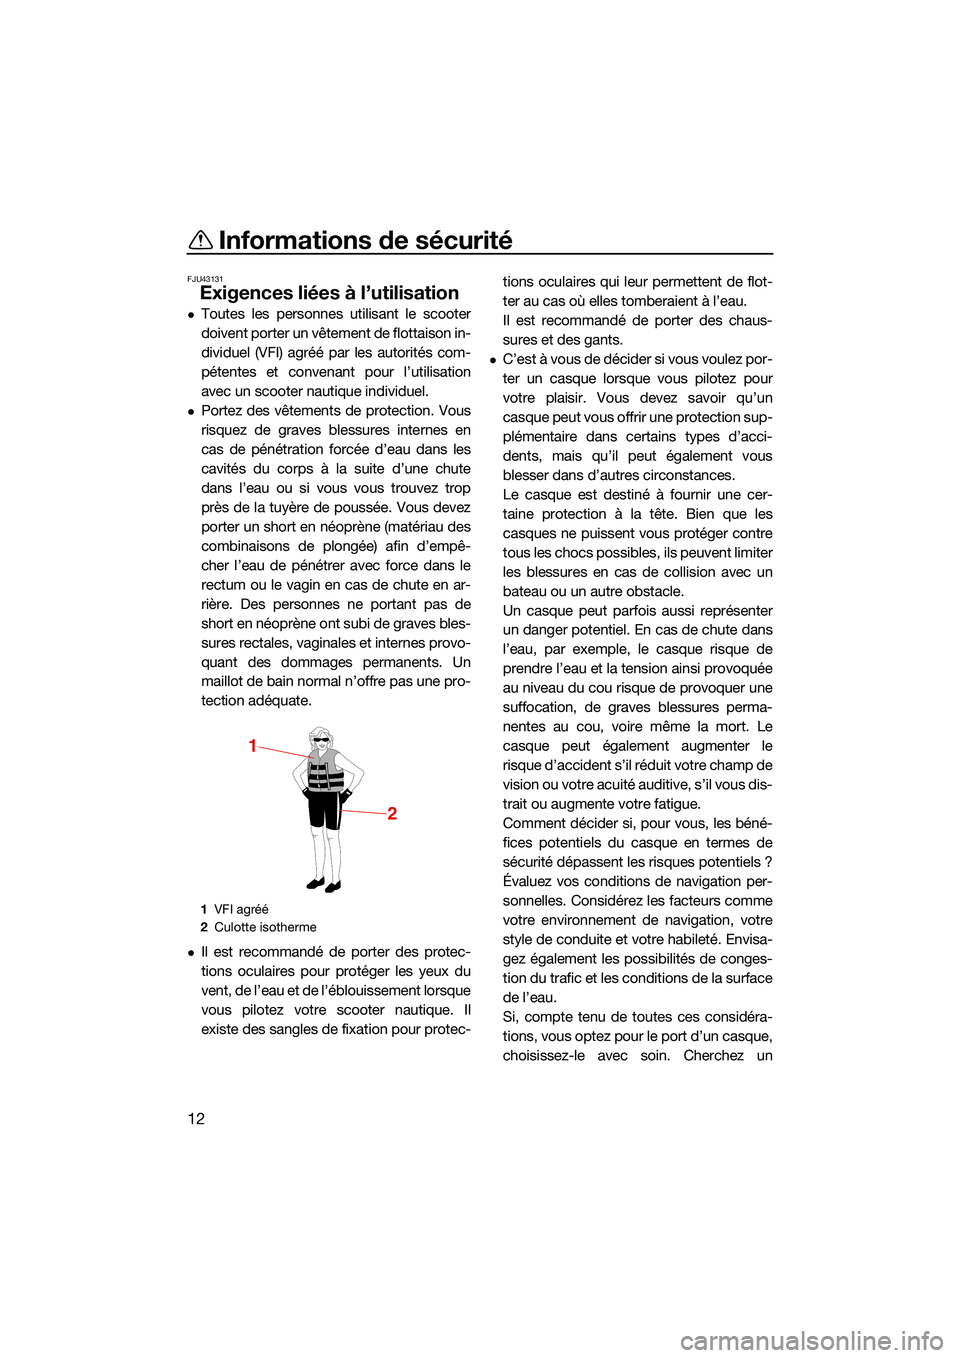 YAMAHA FX HO 2022  Notices Demploi (in French) Informations de sécurité
12
FJU43131
Exigences liées à l’utilisation
Toutes les personnes utilisant le scooter
doivent porter un vêtement de flottaison in-
dividuel (VFI) agréé par les aut